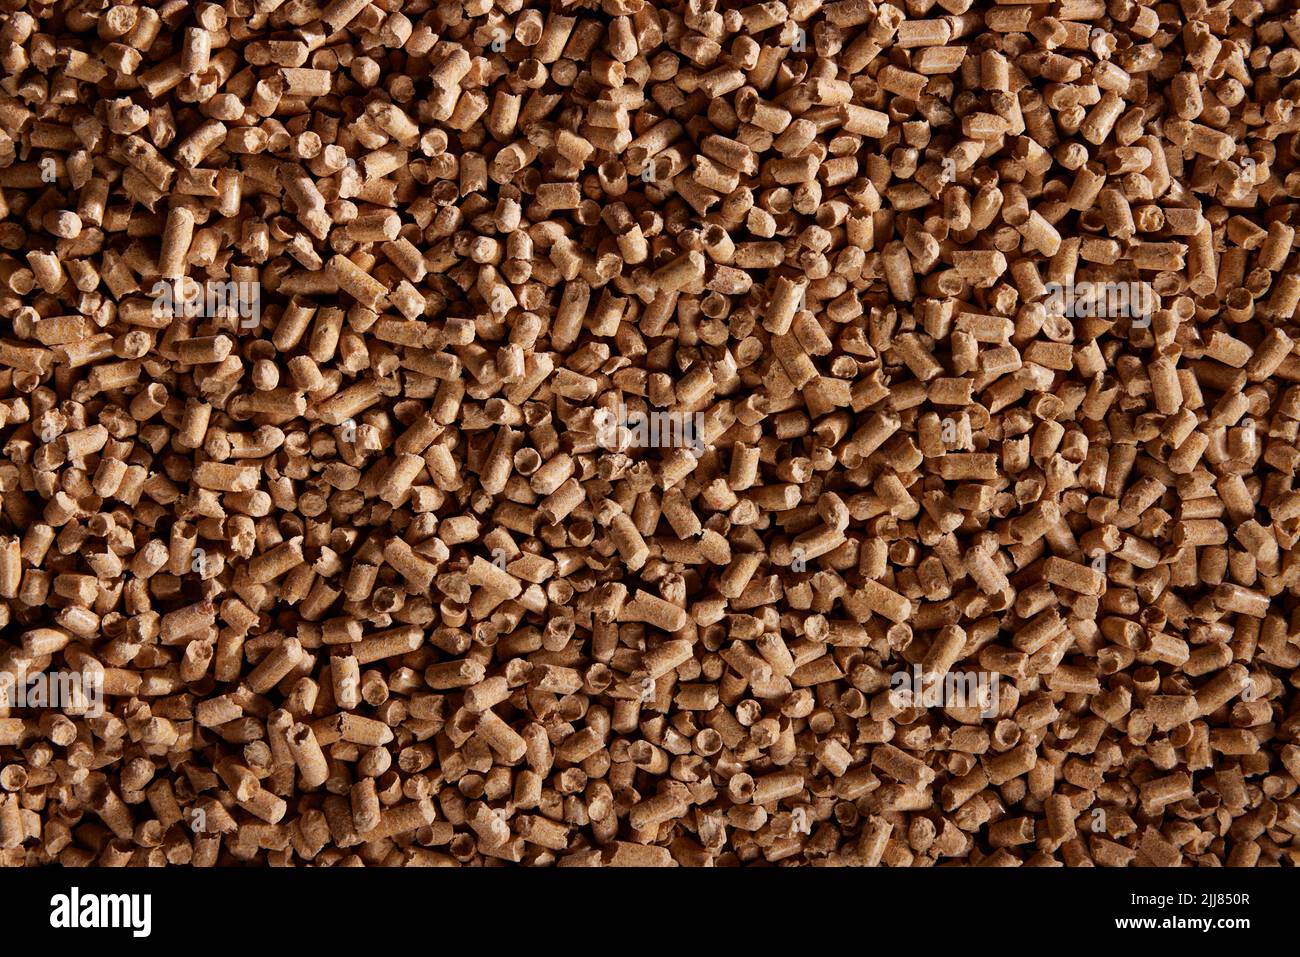 Vista superior de fondo natural de montón de pellets de madera cilíndricos esparcidos en la superficie durante el día Foto de stock